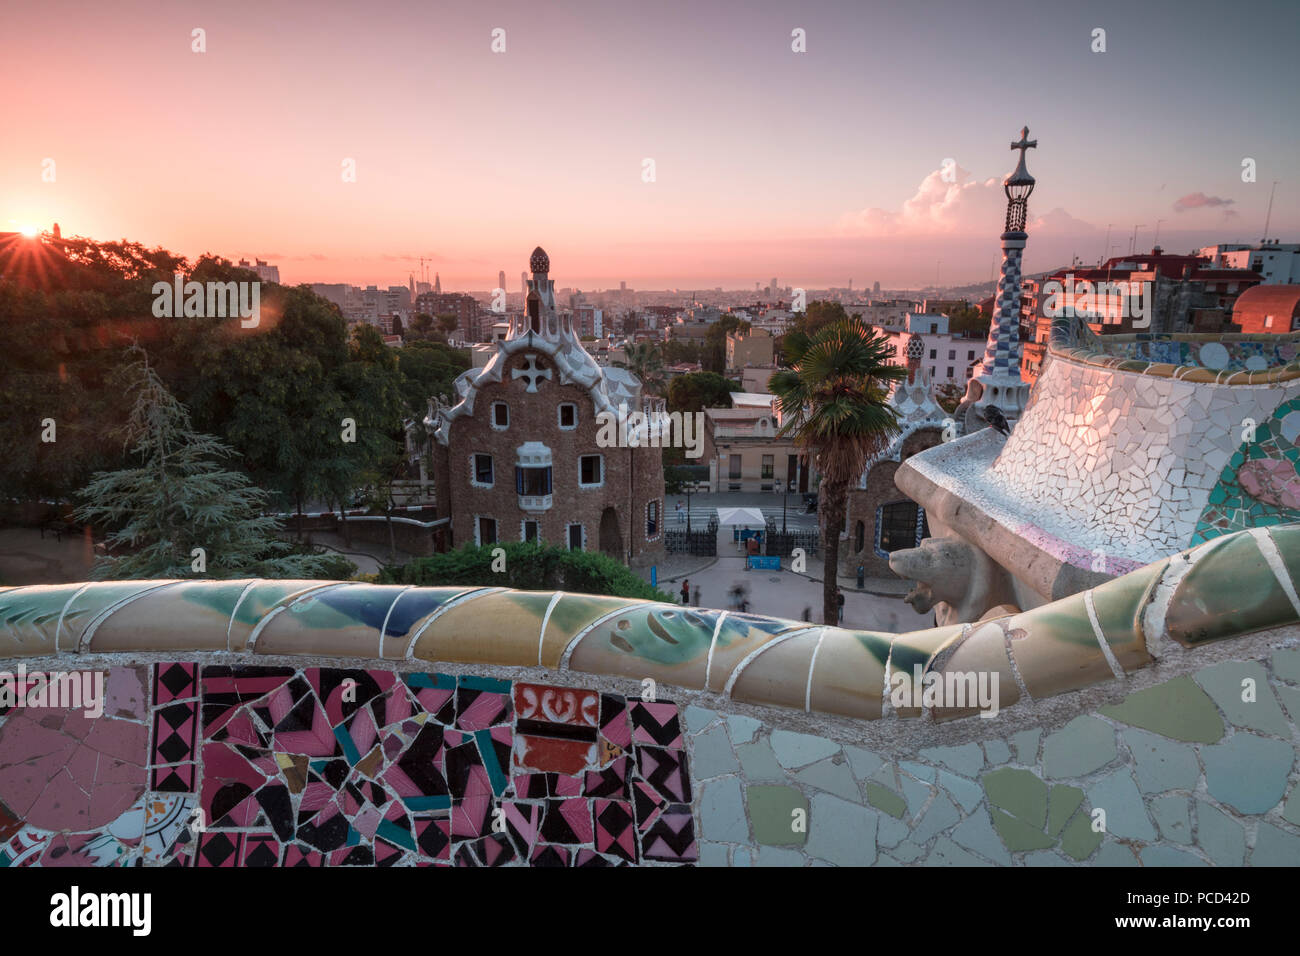 Dettagli di Antoni Gaudì architettura nel Parco Guell, Sito Patrimonio Mondiale dell'UNESCO, Barcellona, in Catalogna, Spagna, Europa Foto Stock